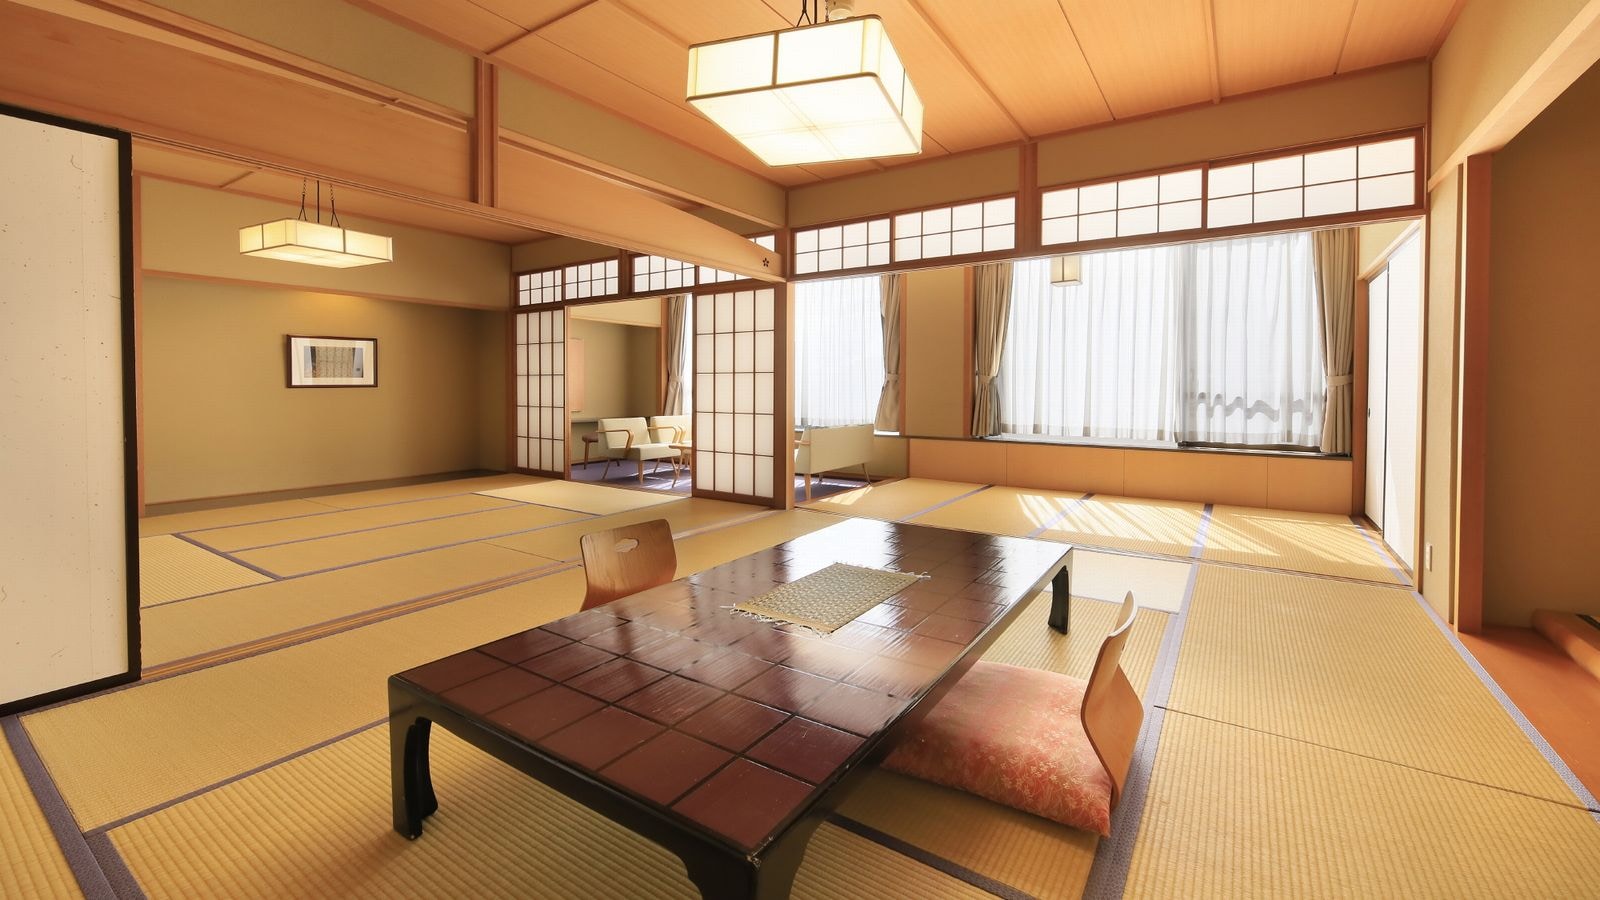 Kamar khusus, bebas rokok "Kamar bergaya Jepang" 10 tikar tatami + 10 tikar tatami + pelek lebar [dengan bak mandi dan toilet]